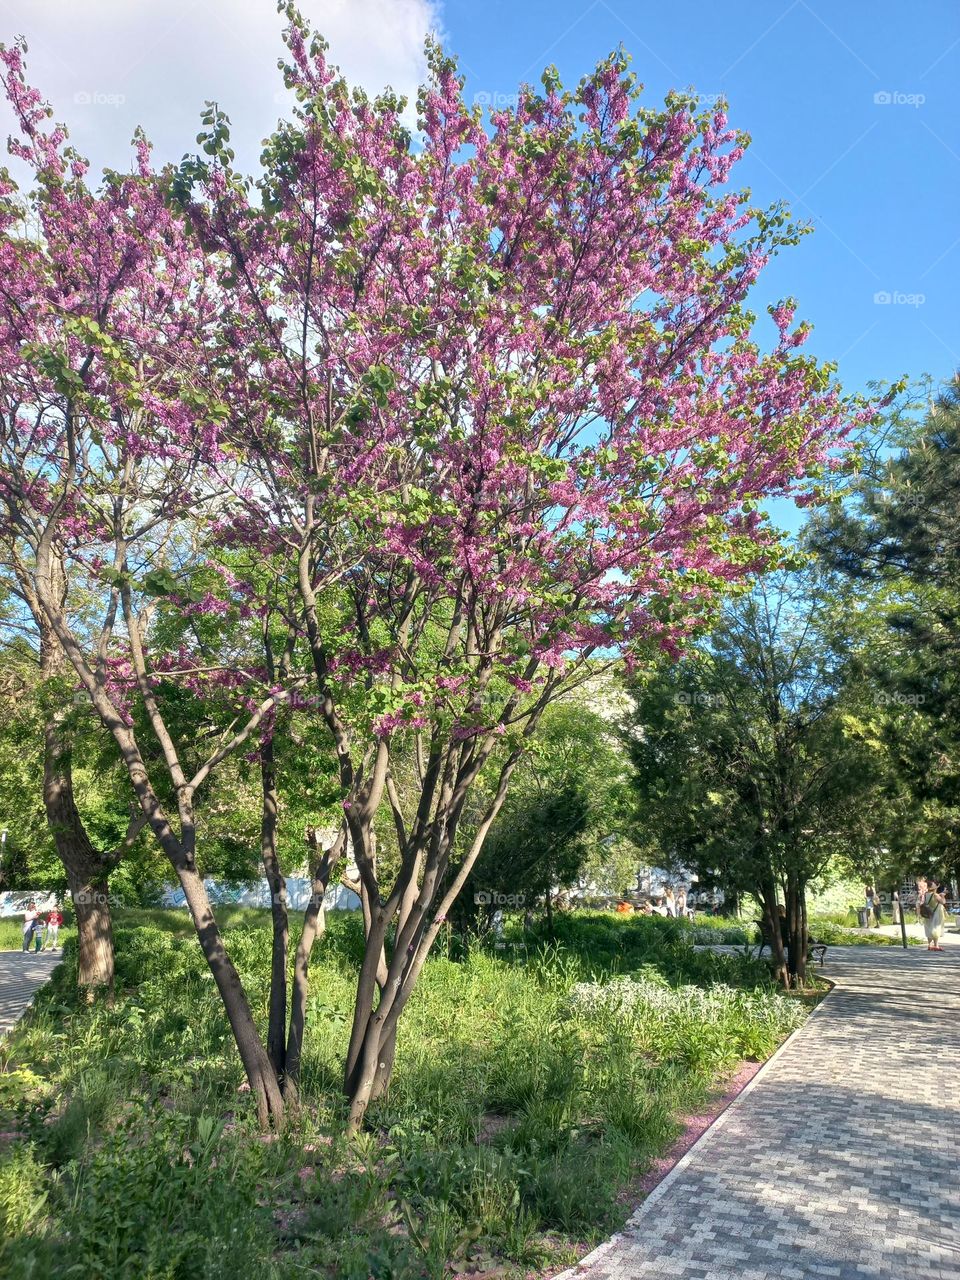 flowering tree in the park.